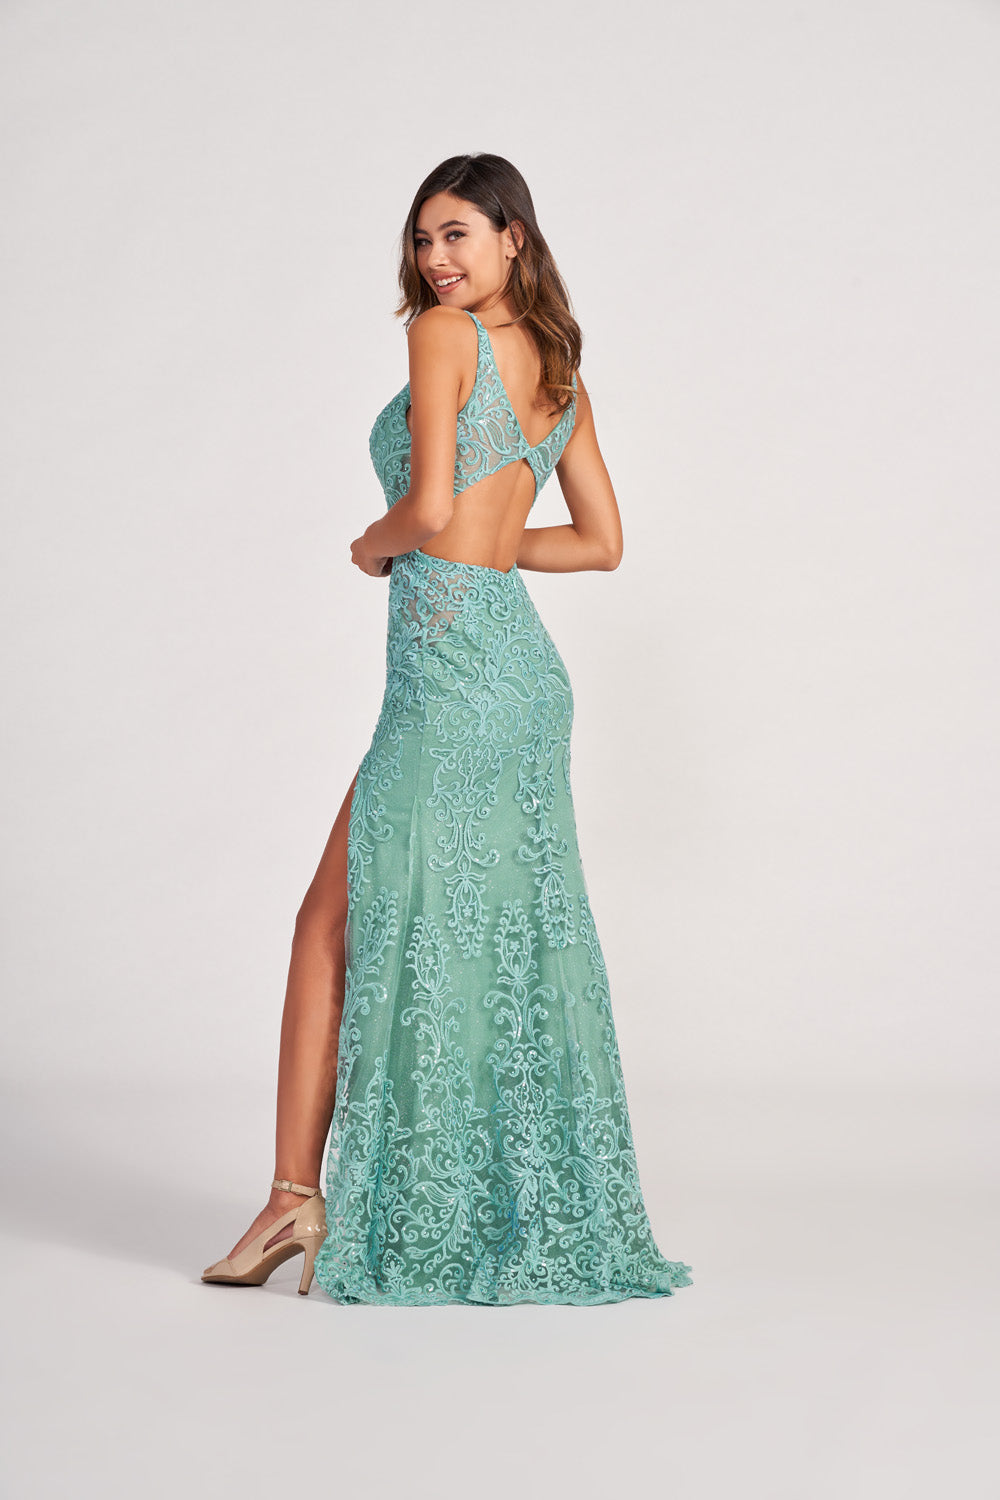 Green V-neck Lace Long Prom Dress, A-Line Evening Dress with Slit –  Loveydress